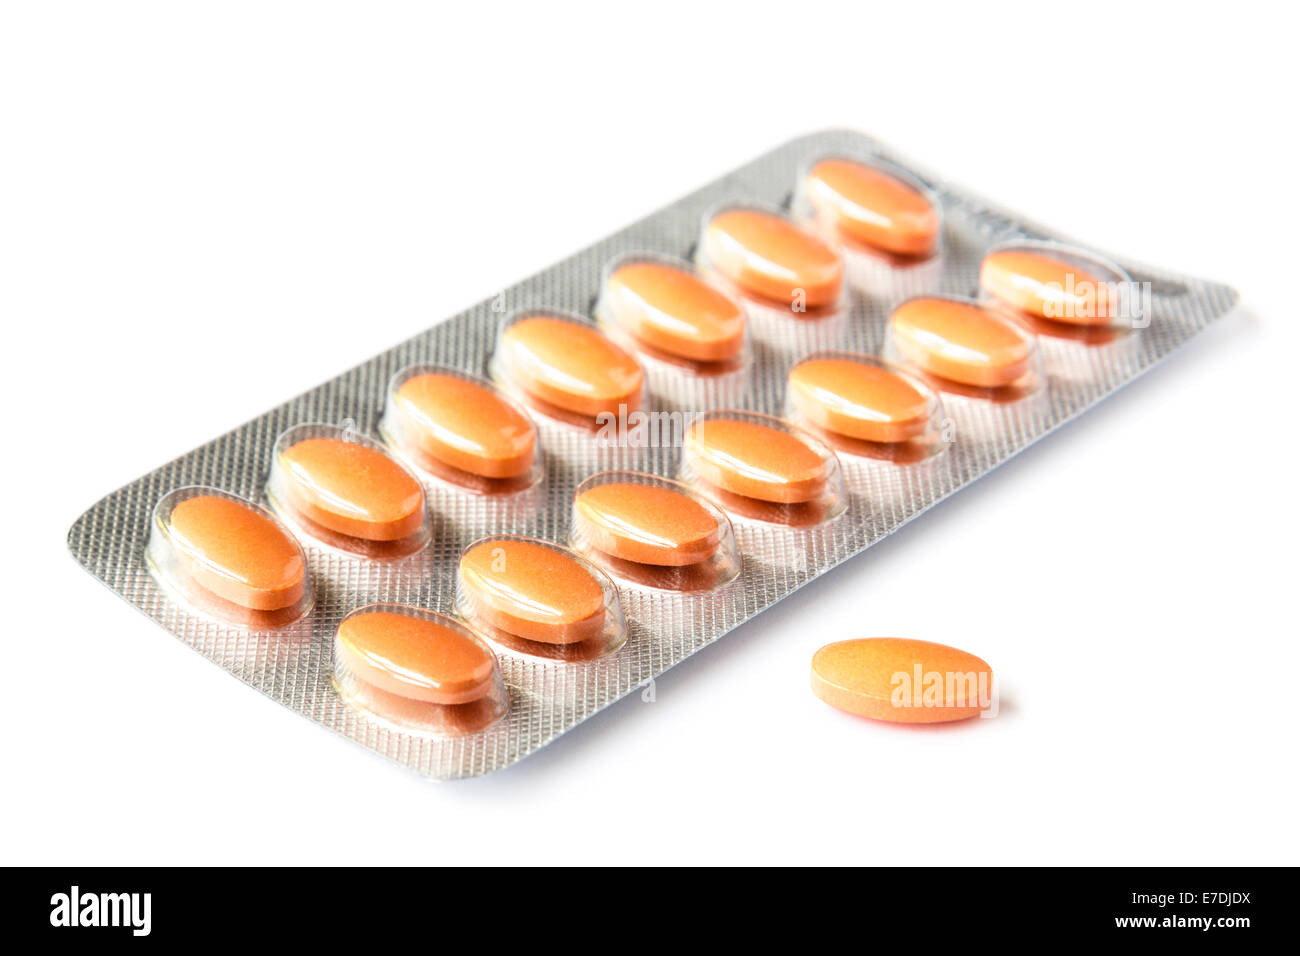 Simvastatin 40 mg Statin Tabletten verschrieben Medikamente für die Behandlung von hohem Cholesterin in einer Pillen-Folie, die nicht mit einer auf Weiß isolierten Blisterpackung versehen ist Stockfoto